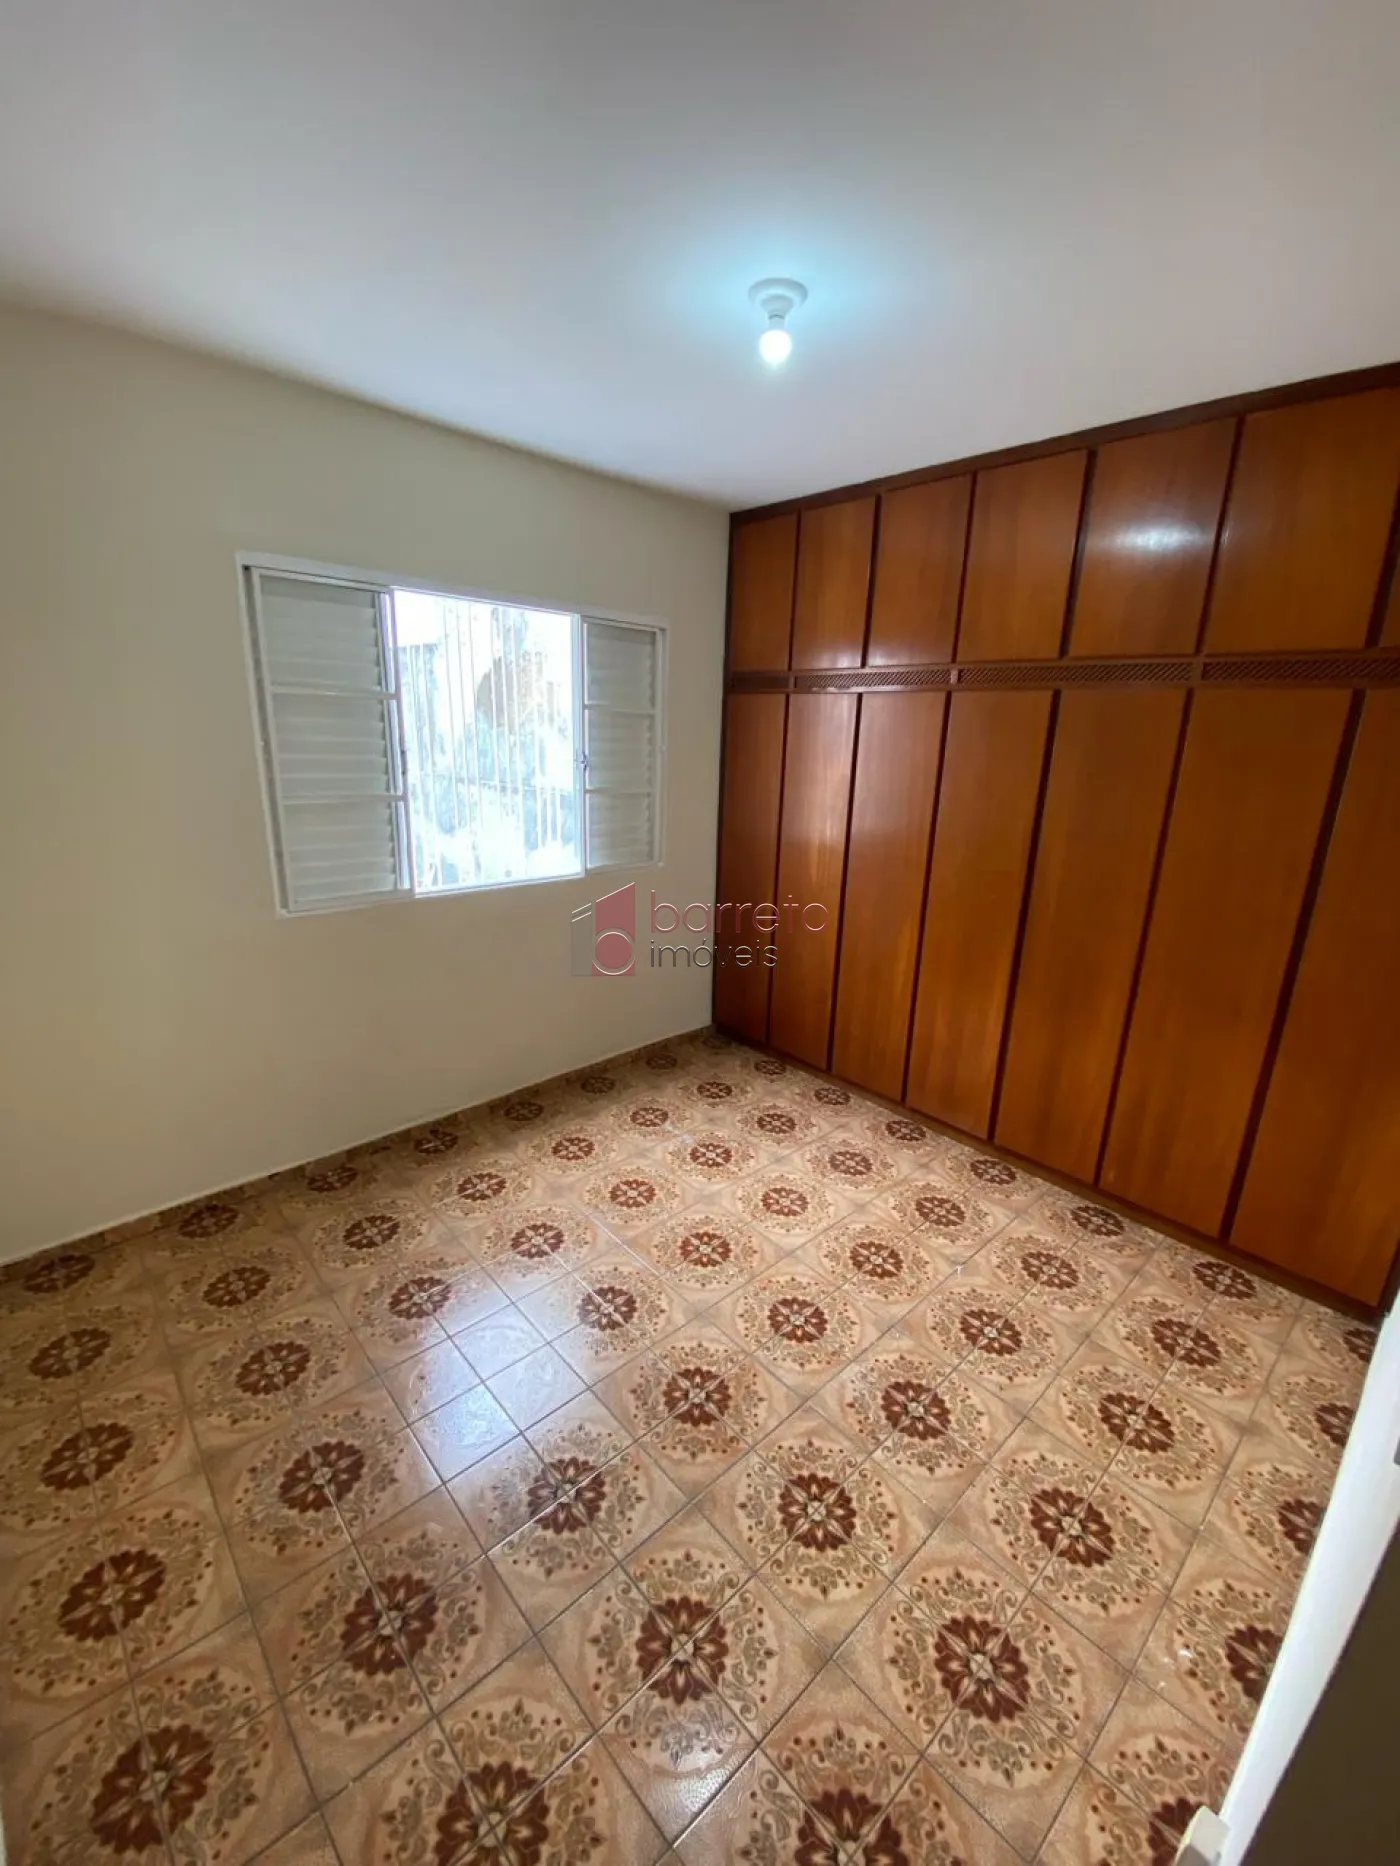 Comprar Casa / Térrea em Jundiaí R$ 680.000,00 - Foto 10